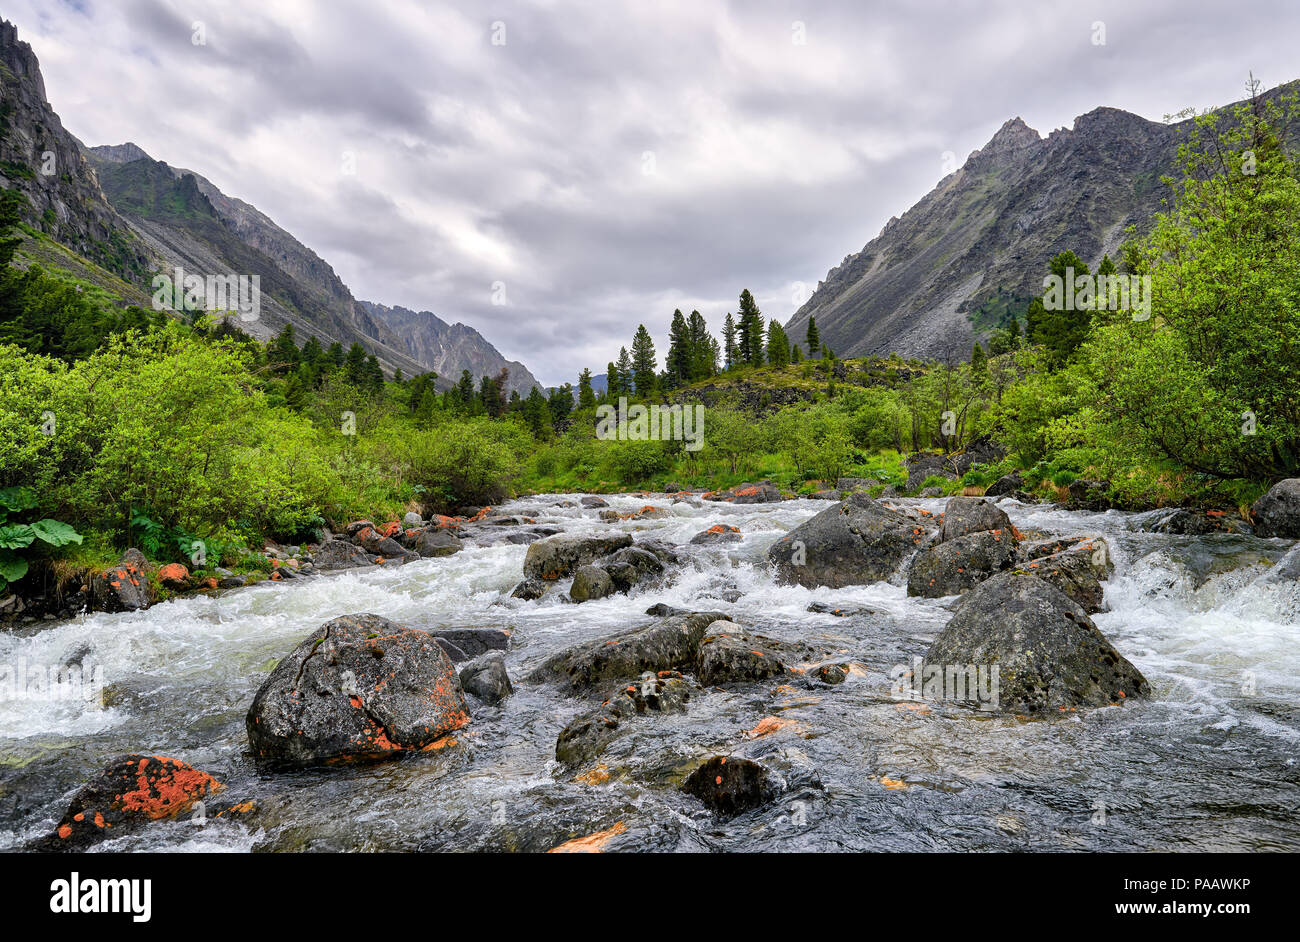 Les grosses pierres dans la rivière de montagne. Les nuages sont couverts de Siberian journée d'été. Sayan de l'Est. La Russie Banque D'Images